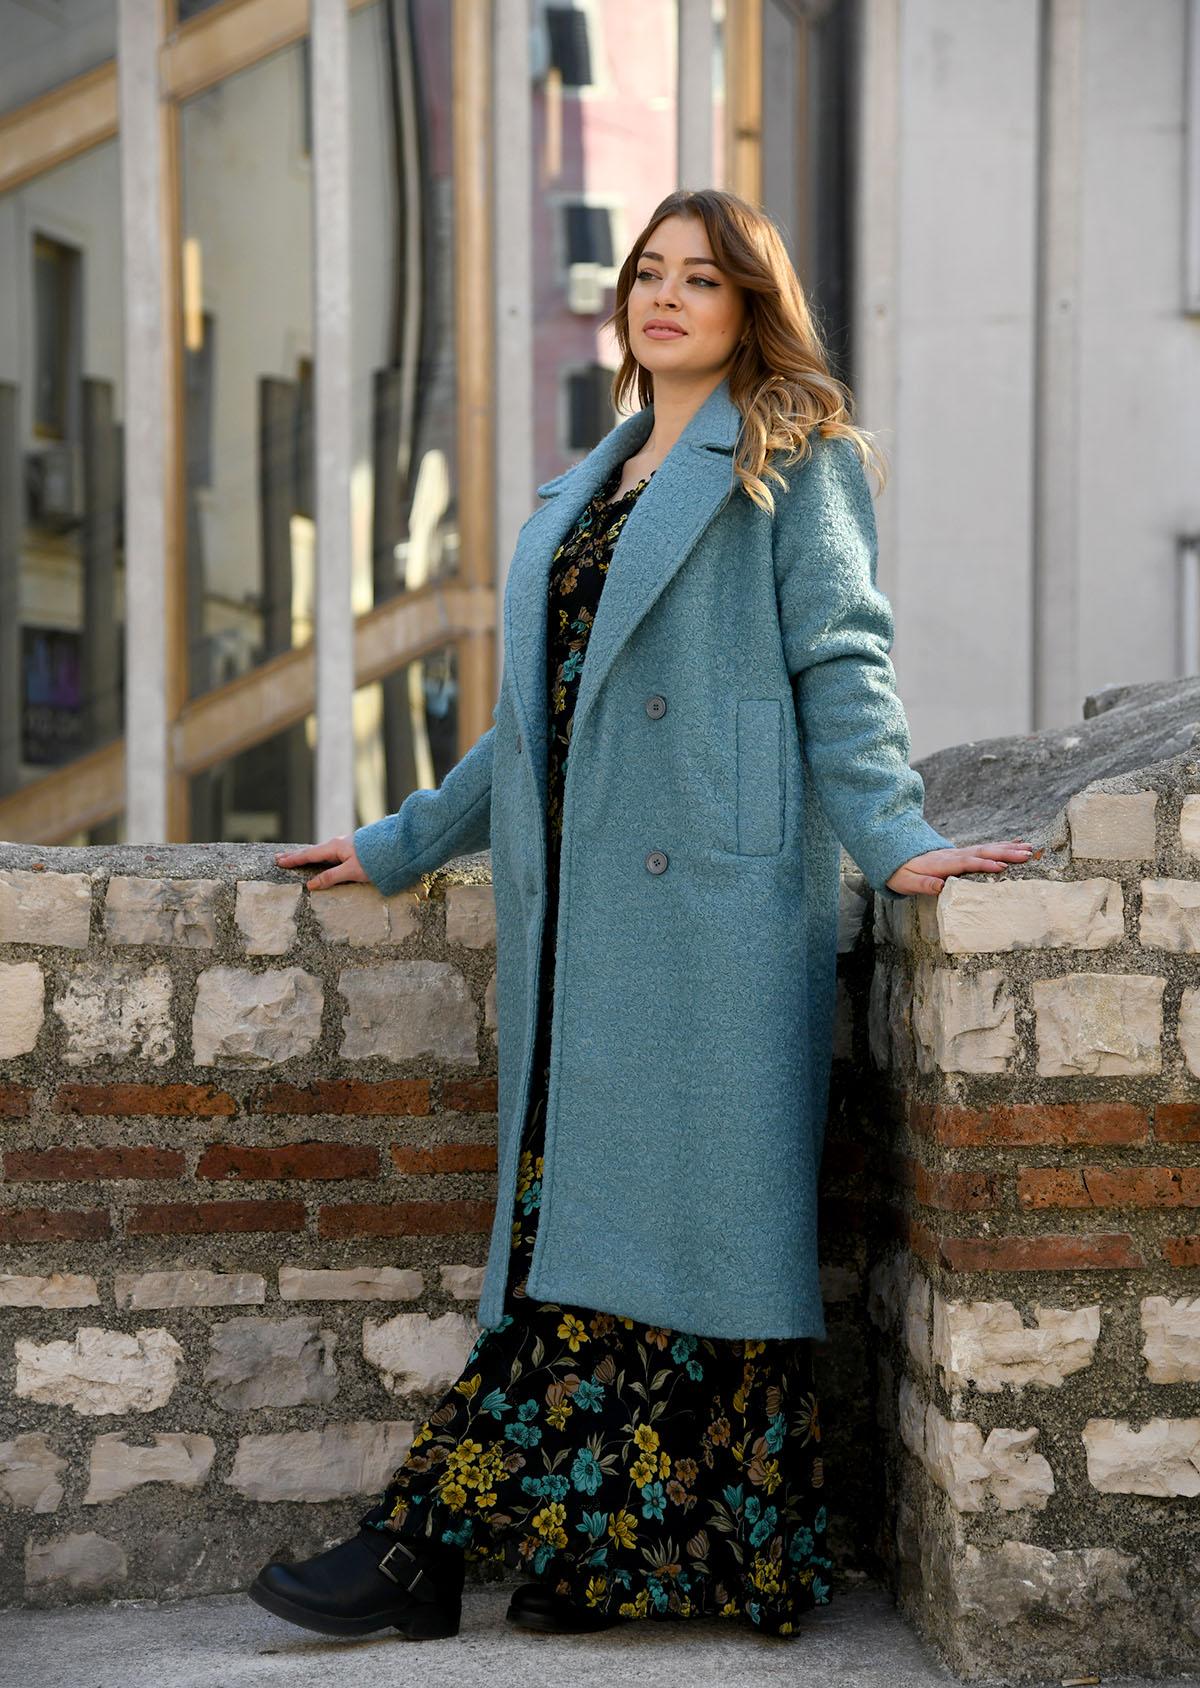 Dašak turske mode stigao je u Rijeku: otvoren je novi butik "Poyraz fashion"